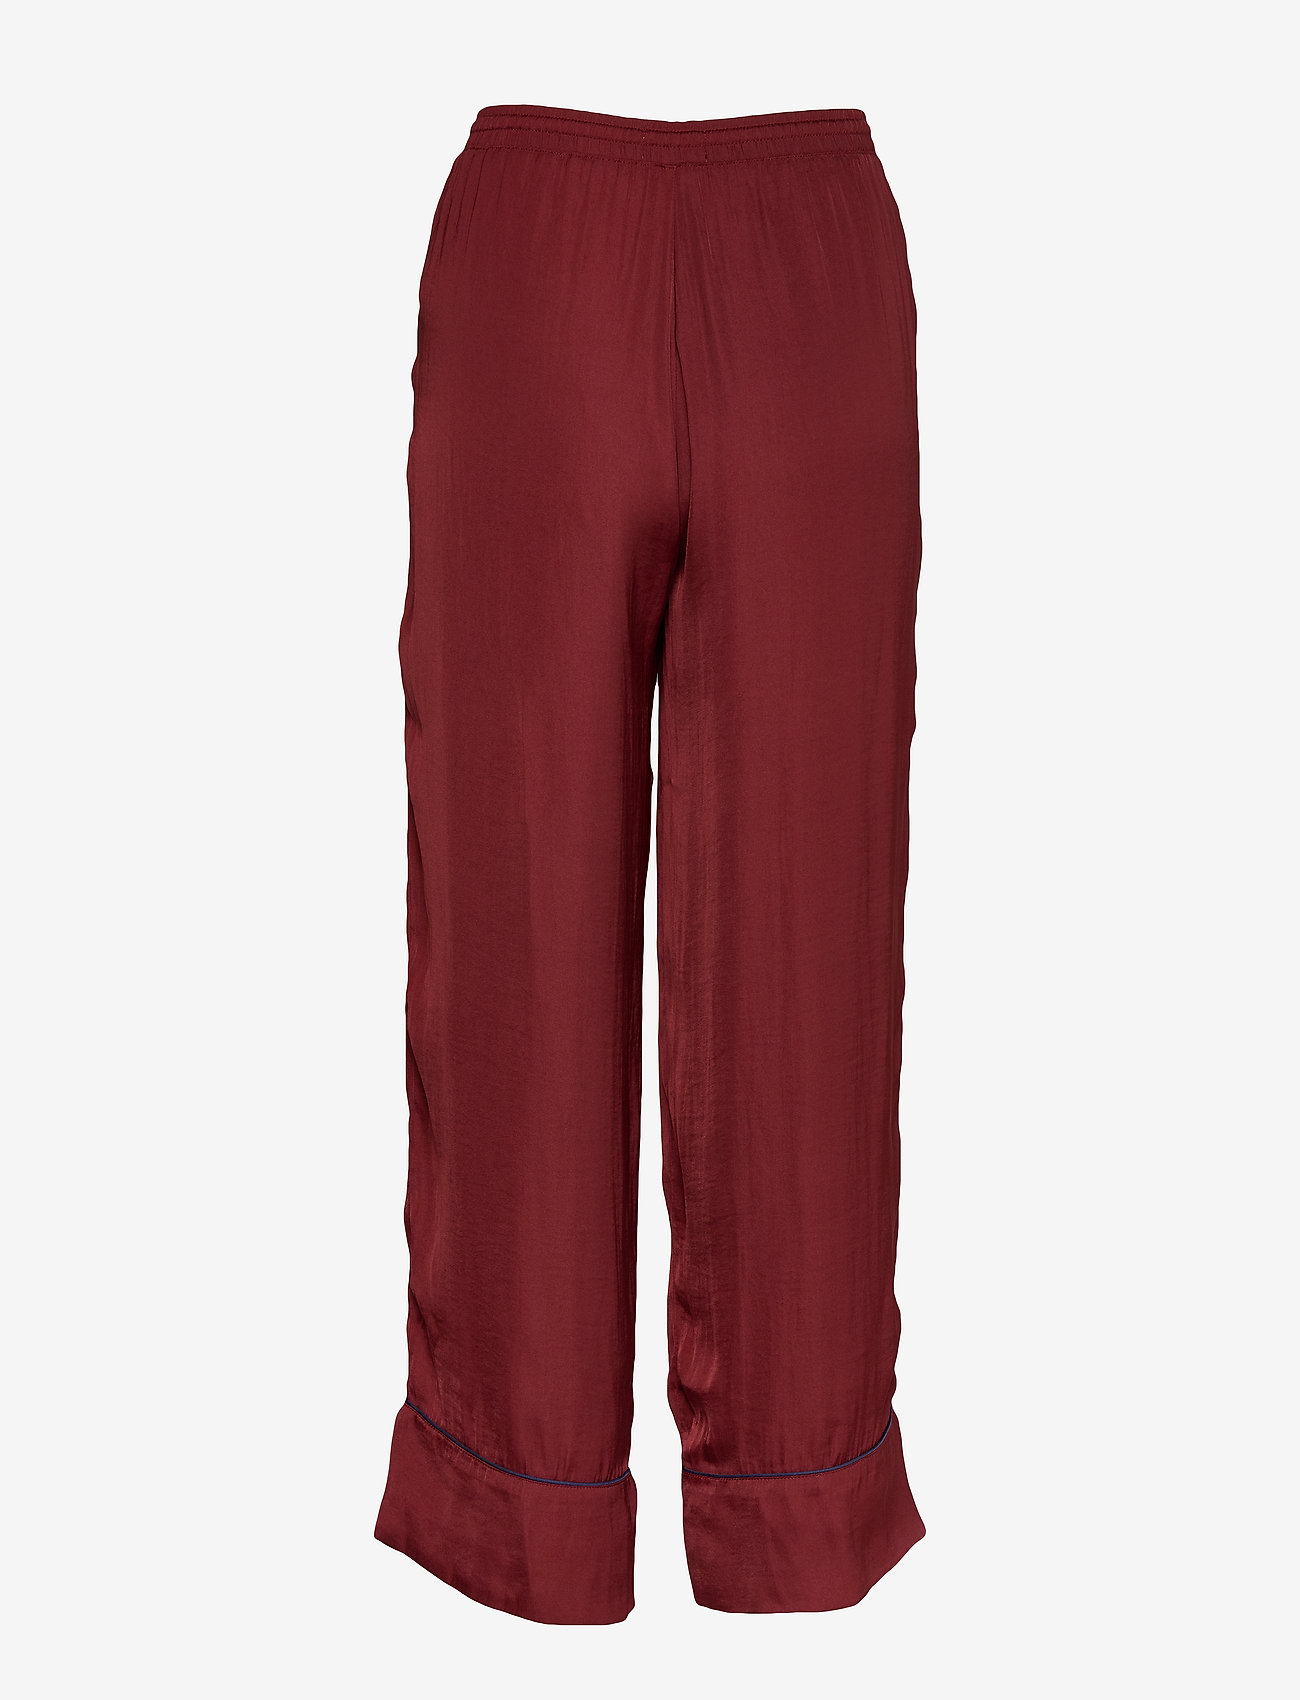 gap maroon pants